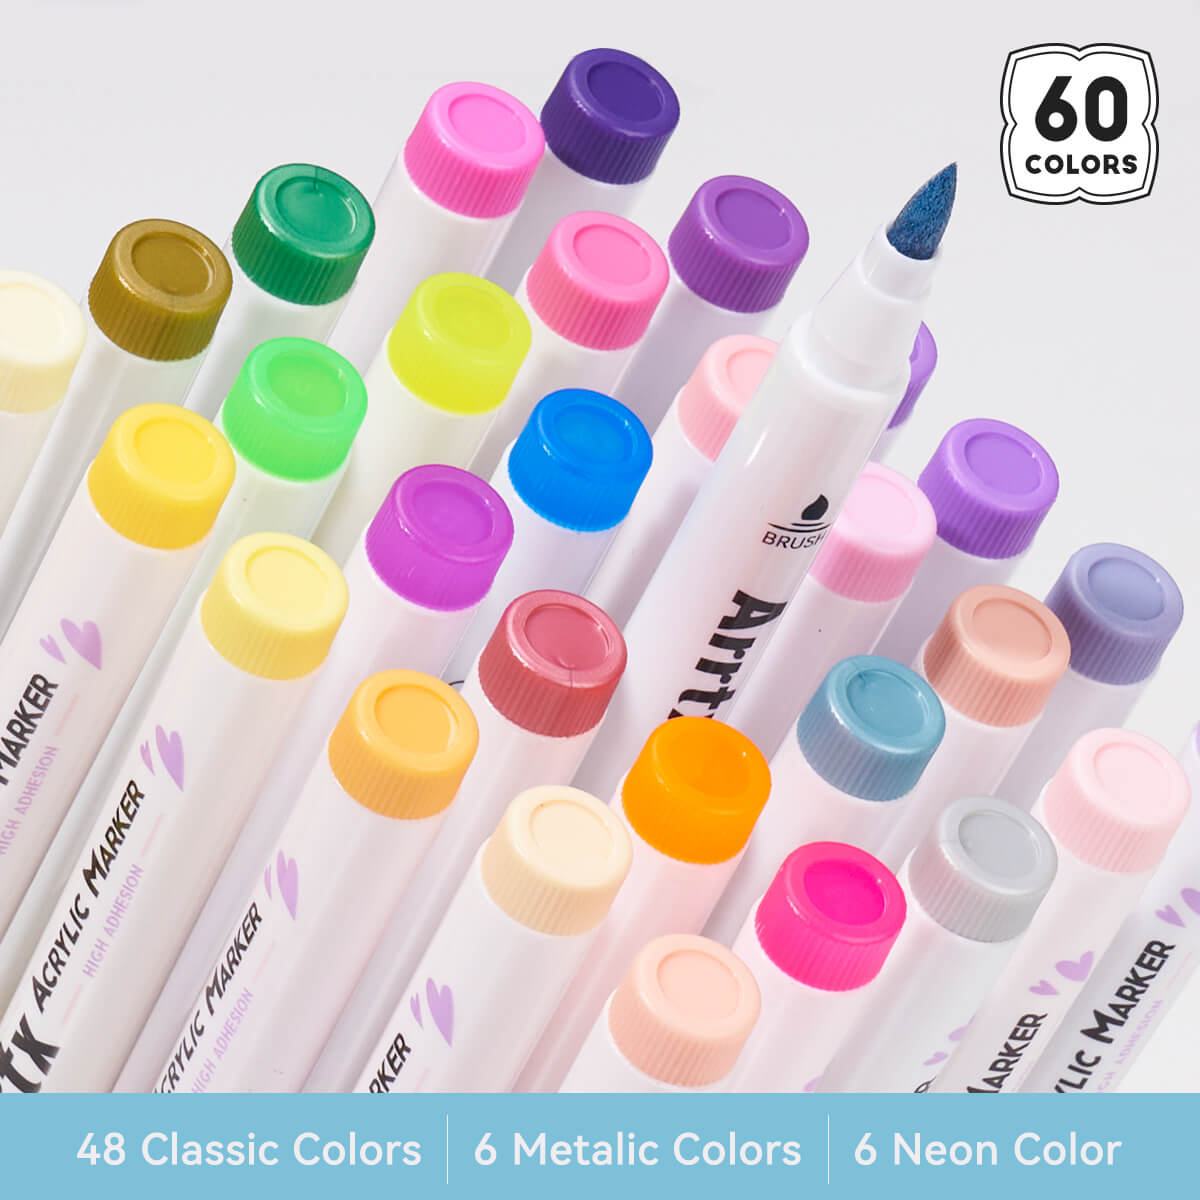 Arrtx Farbstifte, 60 Farben, Acryl-Marker, Pinselspitze, Künstlerbedarf, 60 A